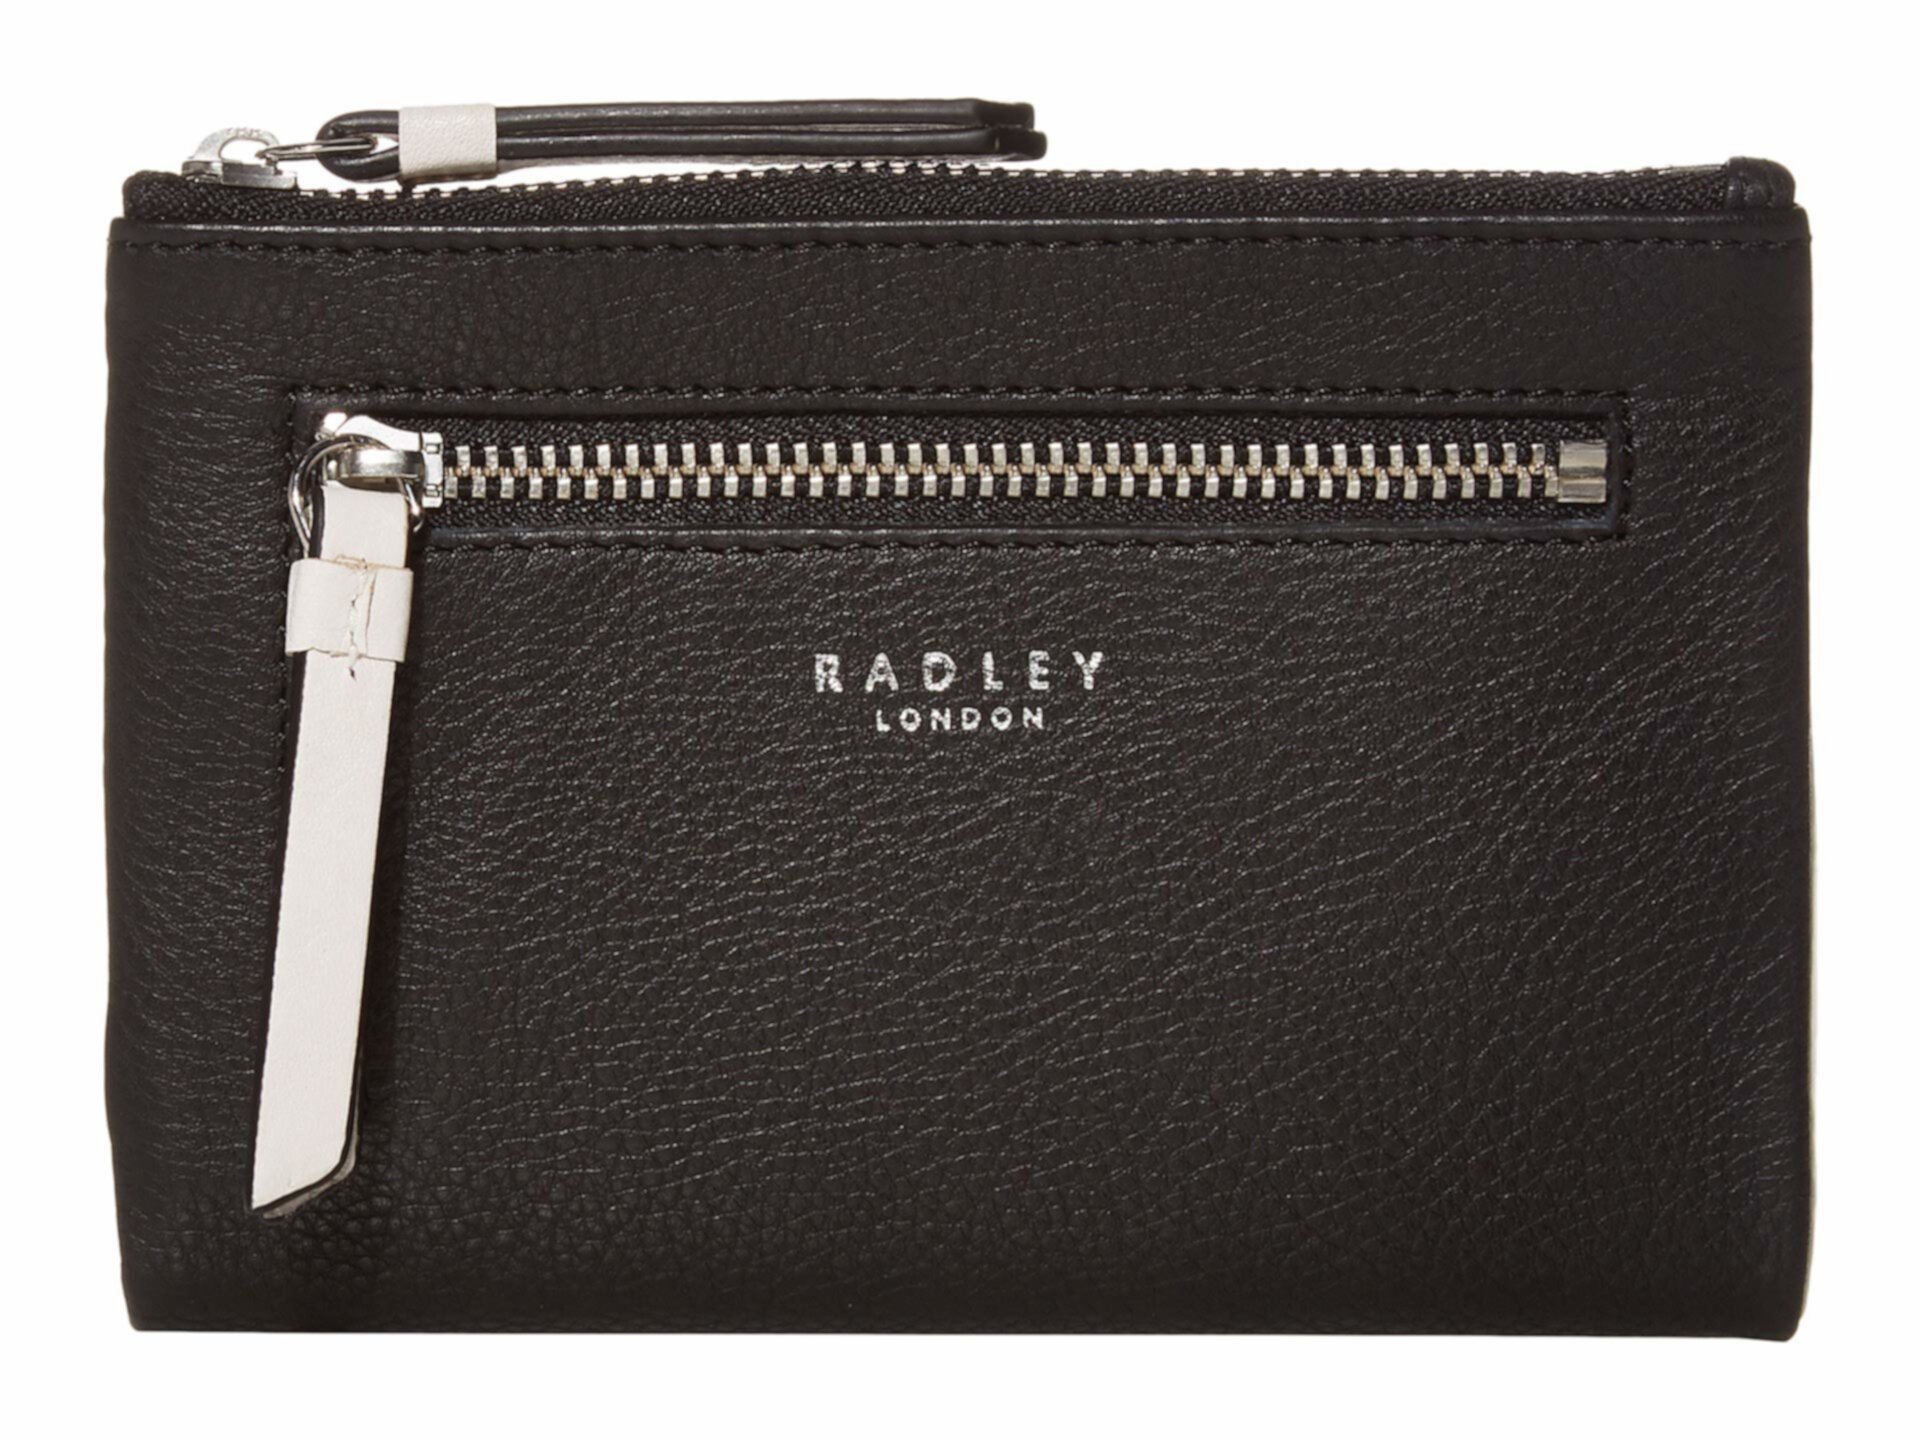 London Pockets - Двойной кошелек среднего размера Radley London